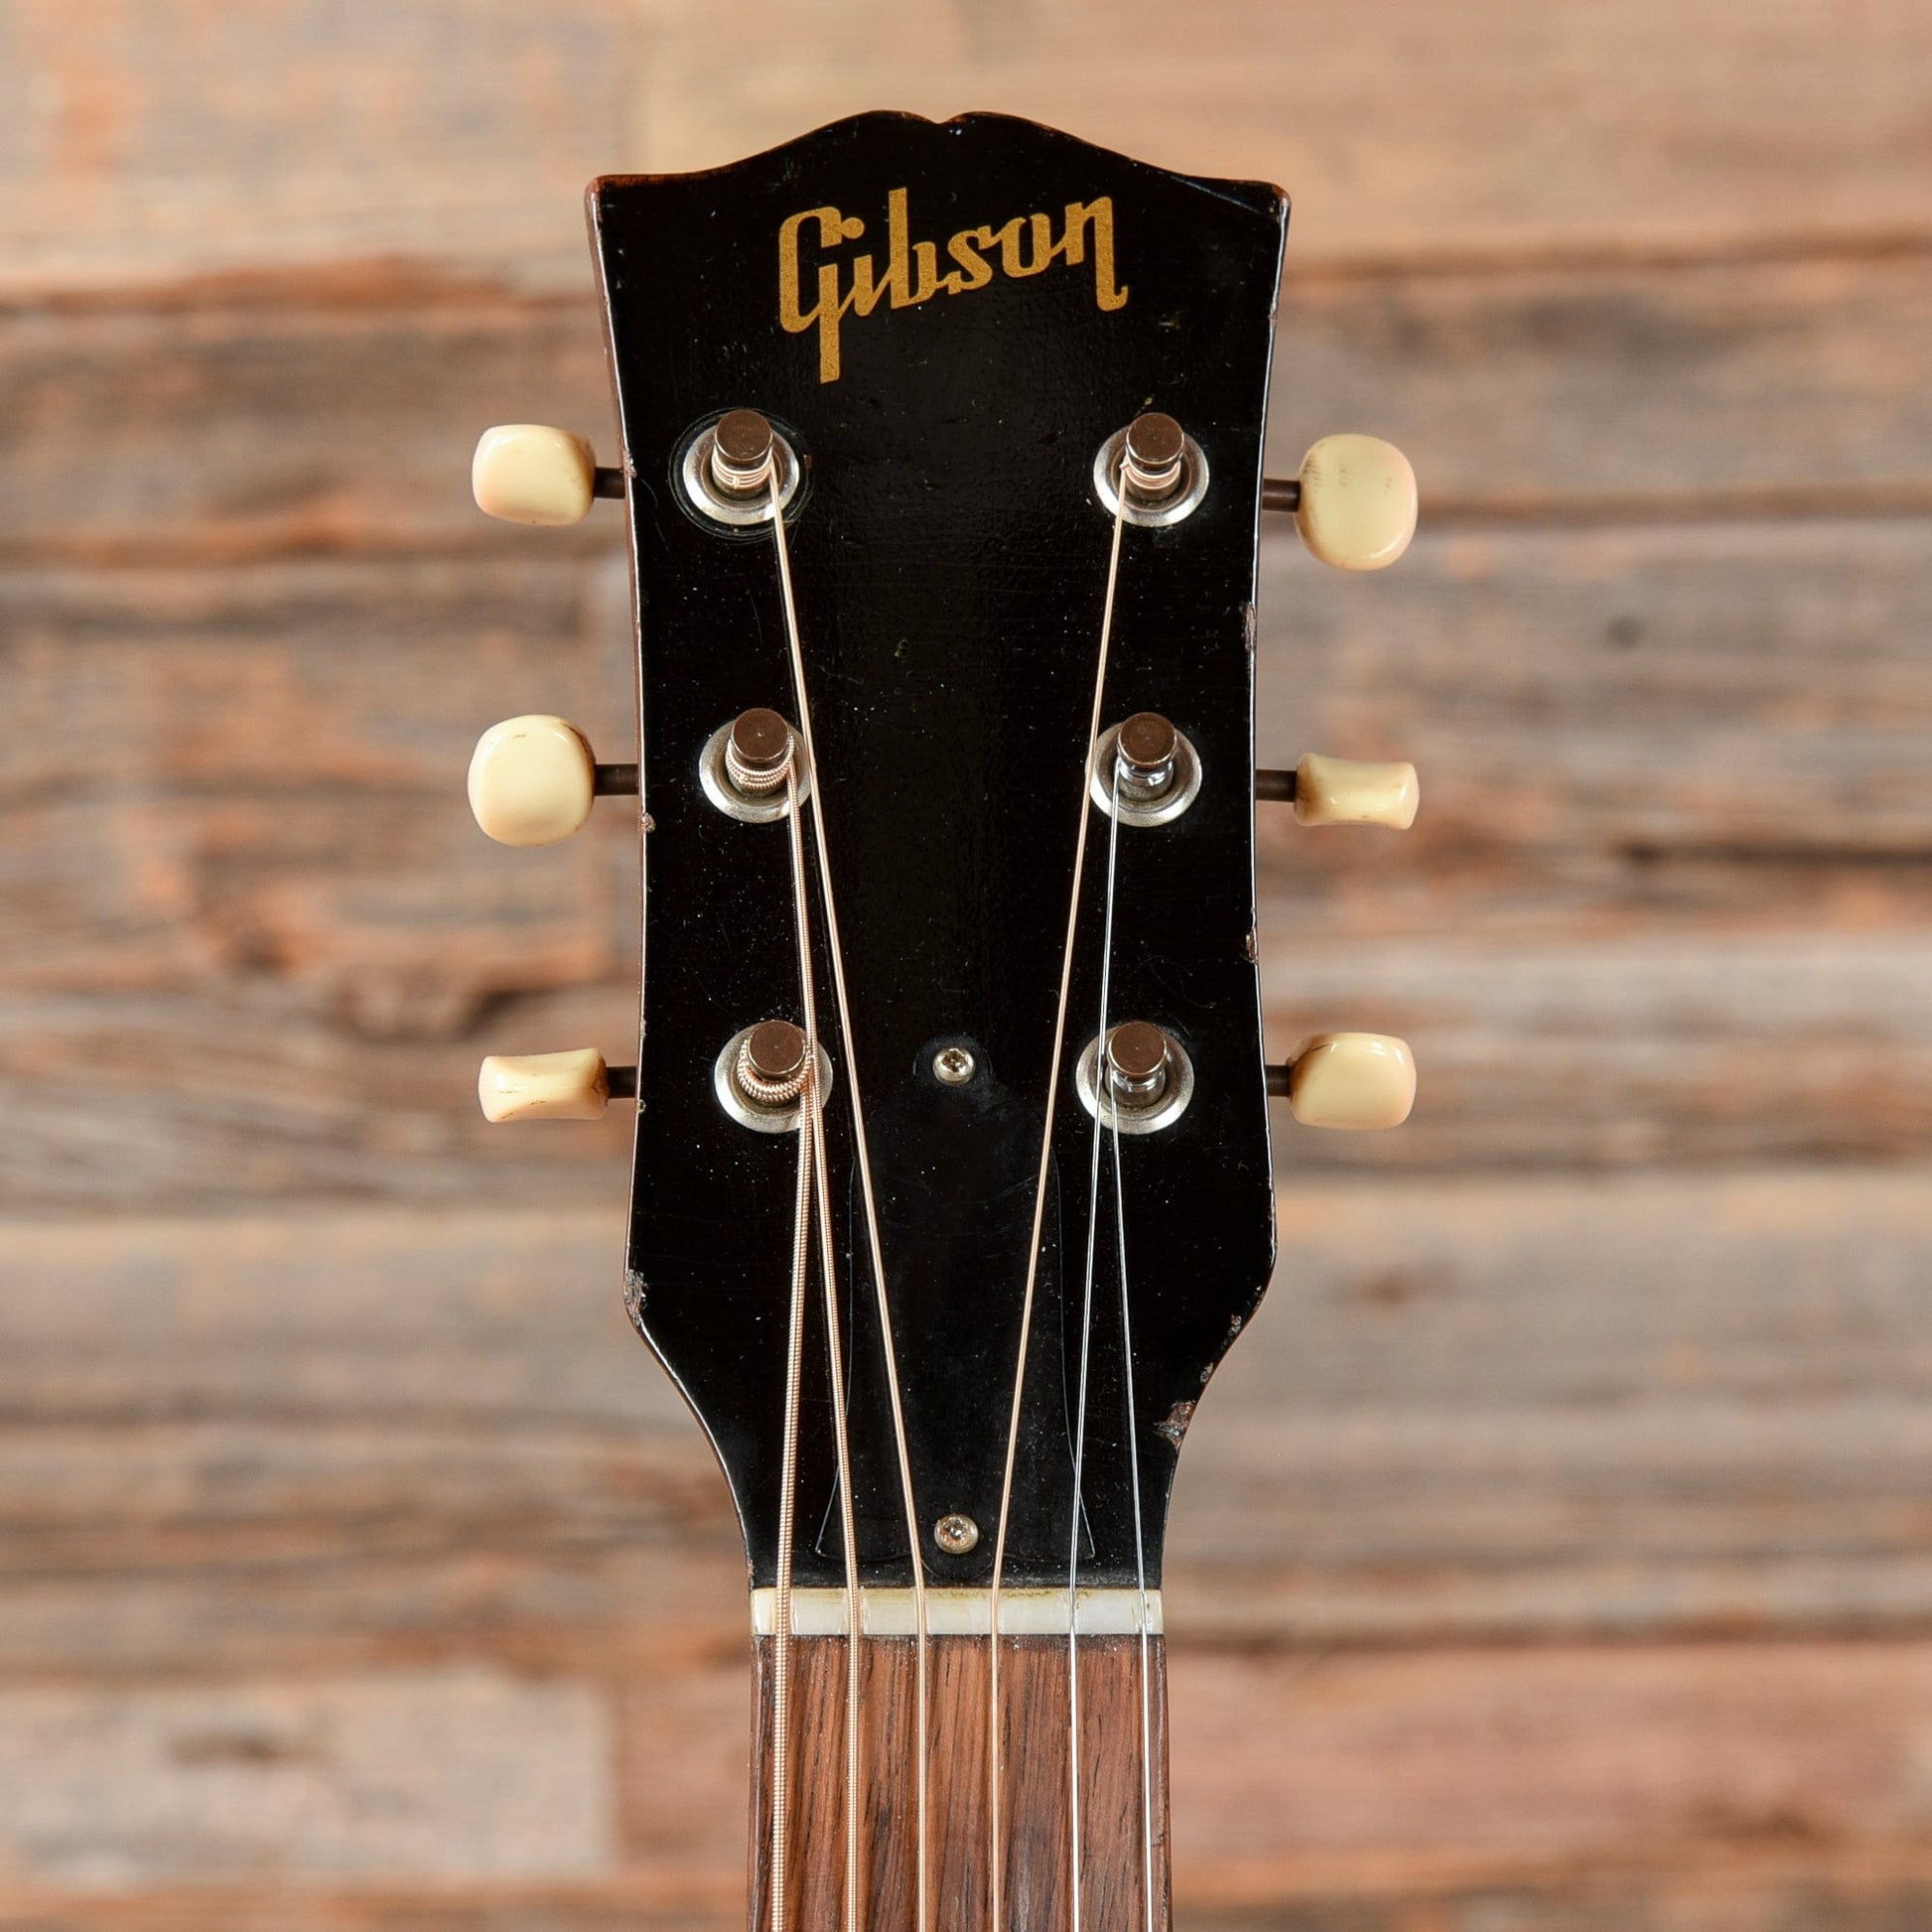 Gibson LG-1 Sunburst 1963 Acoustic Guitars / Concert